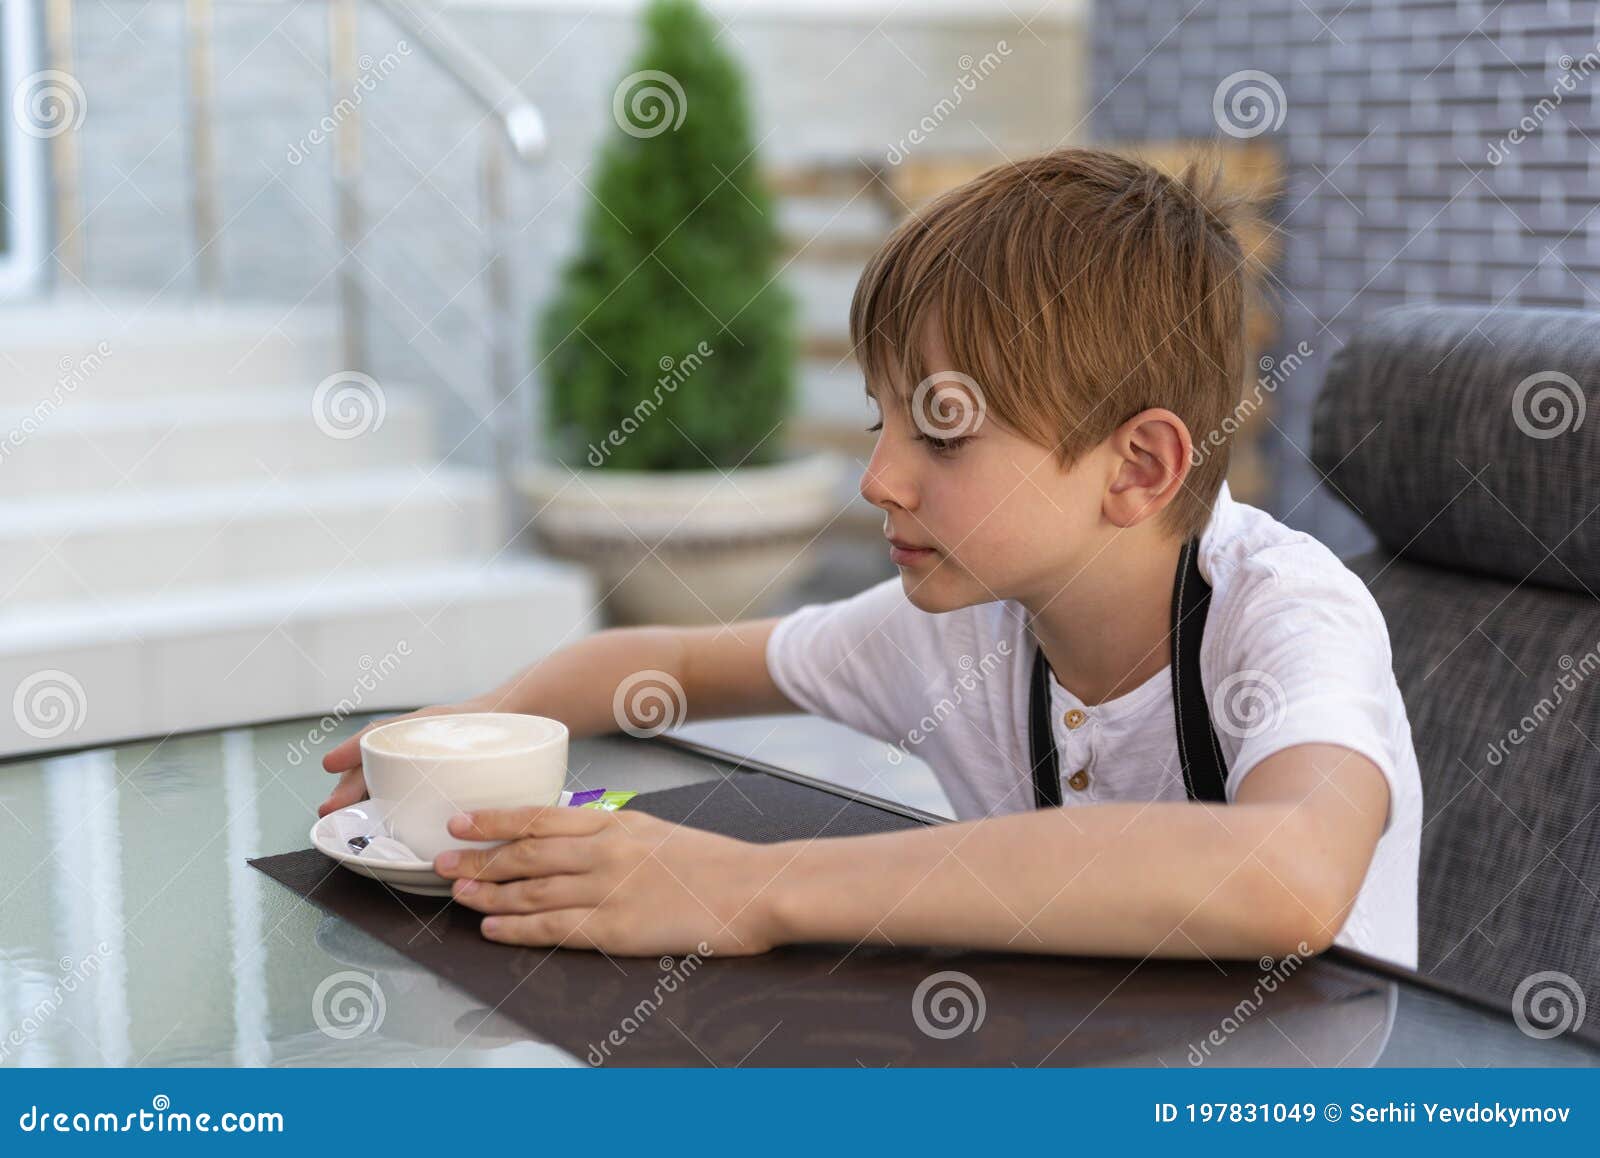 wit Zichtbaar Beschaven Jongen Drinken Koffie in Café Kind in Restaurant Onafhankelijke Tiener  Stock Afbeelding - Image of jongen, buiten: 197831049